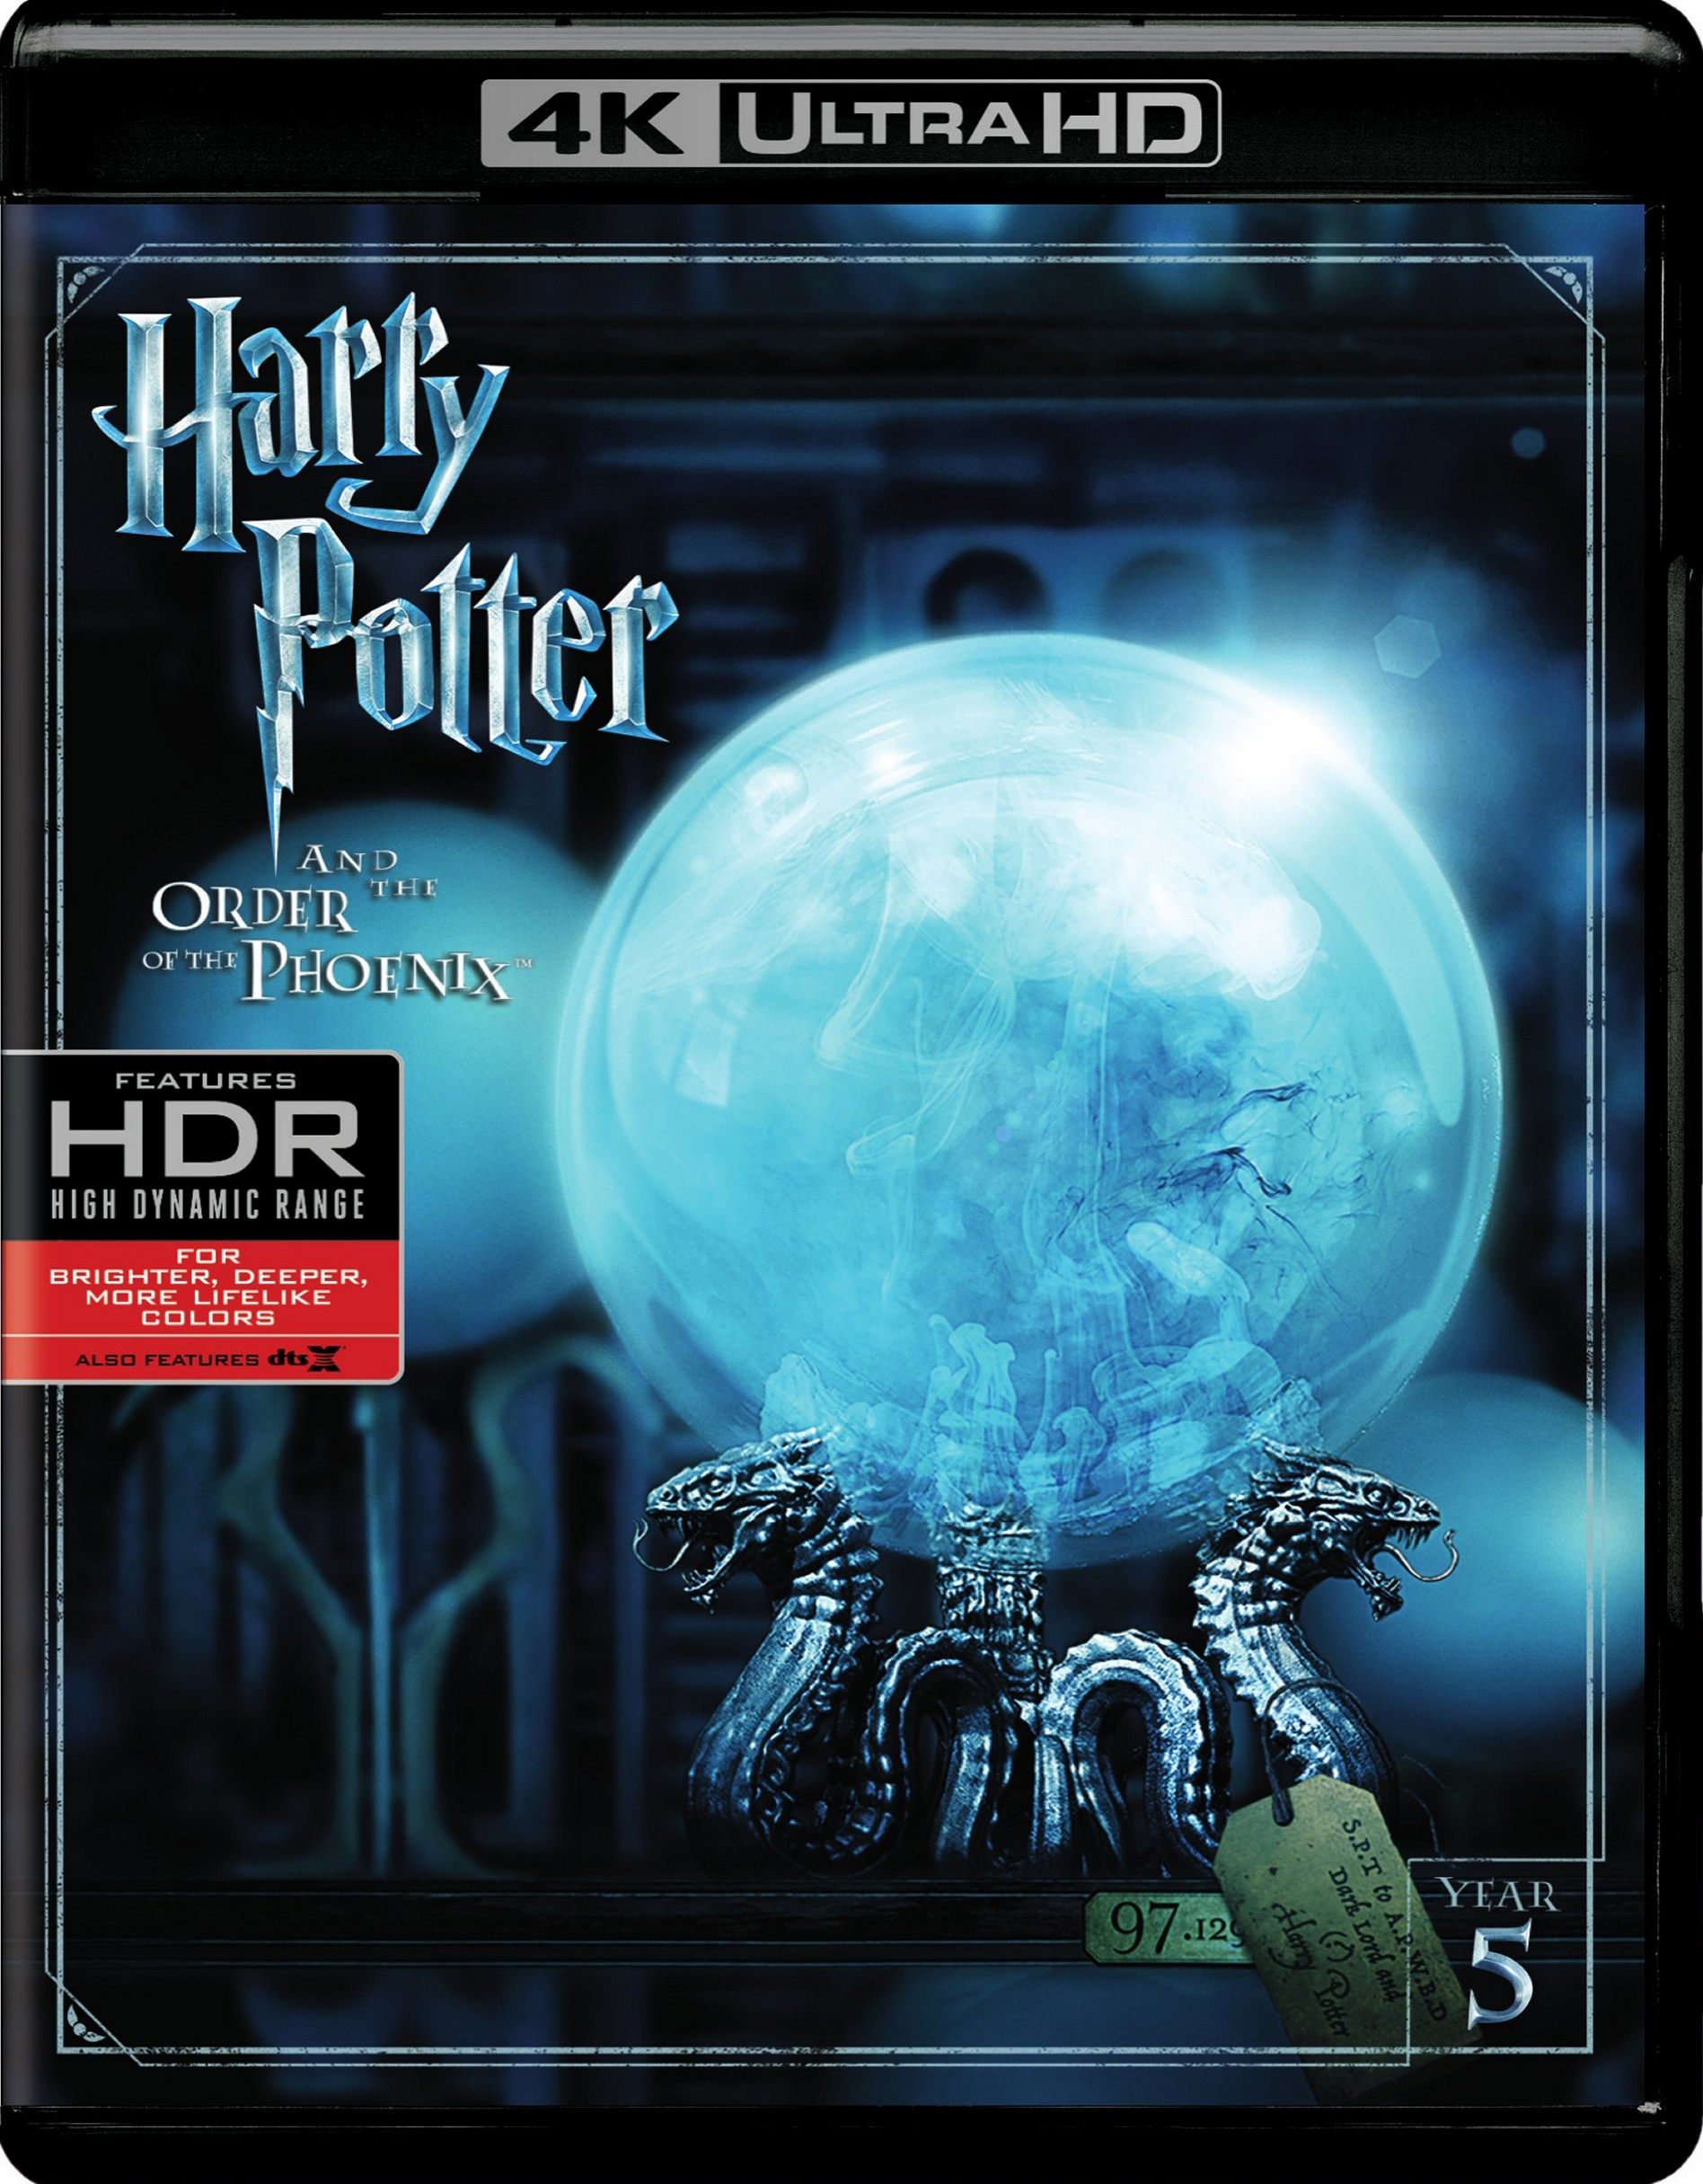 La saga Harry Potter en Blu-ray 4K Ultra HD - Dossiers Blu-ray 4K Ultra HD  - DigitalCiné